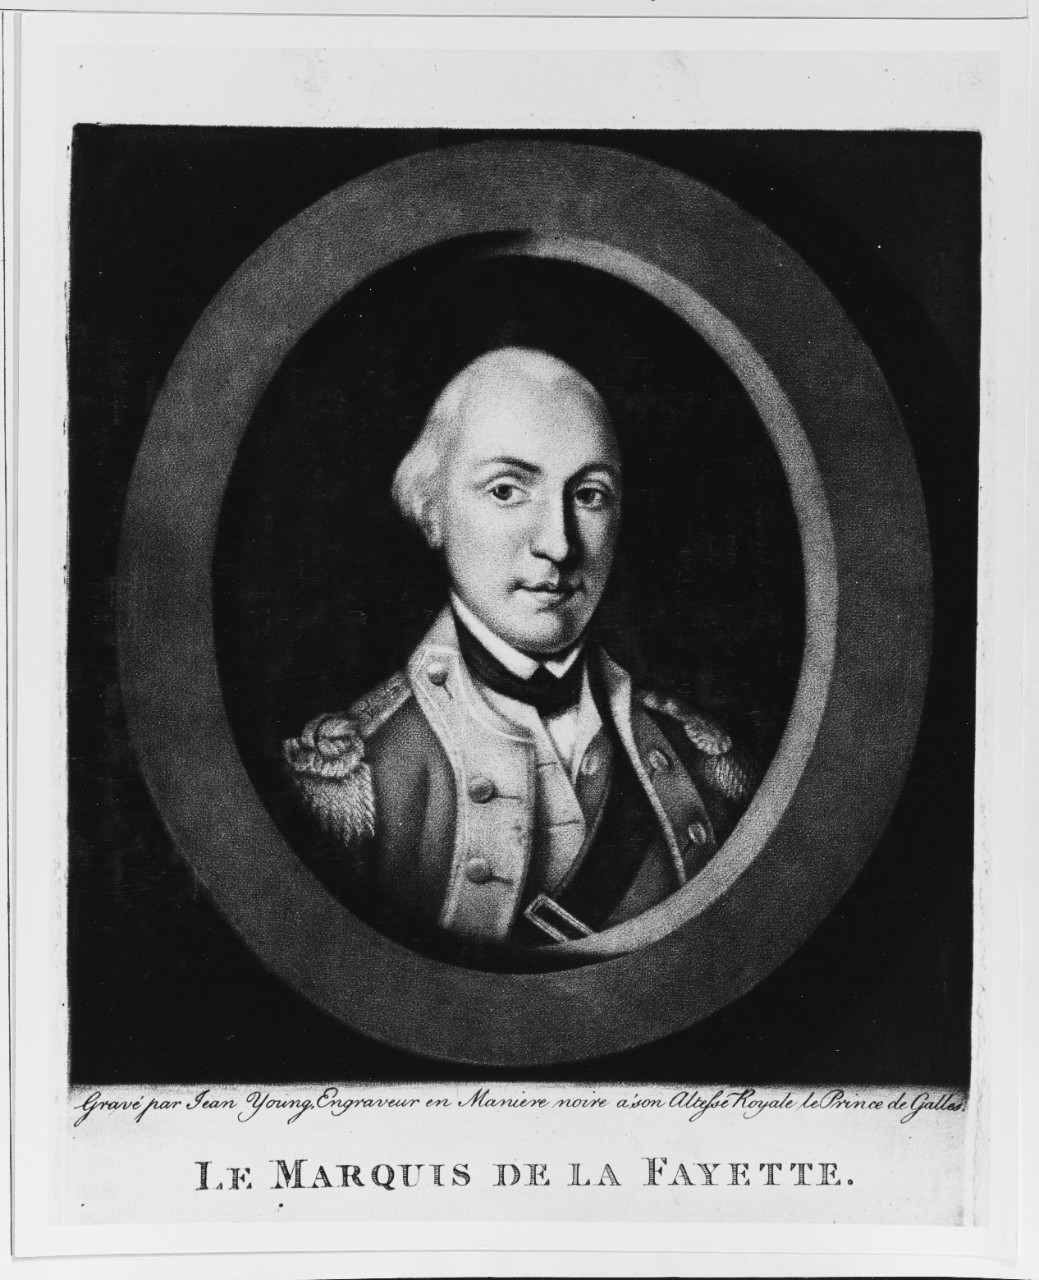 Marquis De Lafayette (1757-1834)